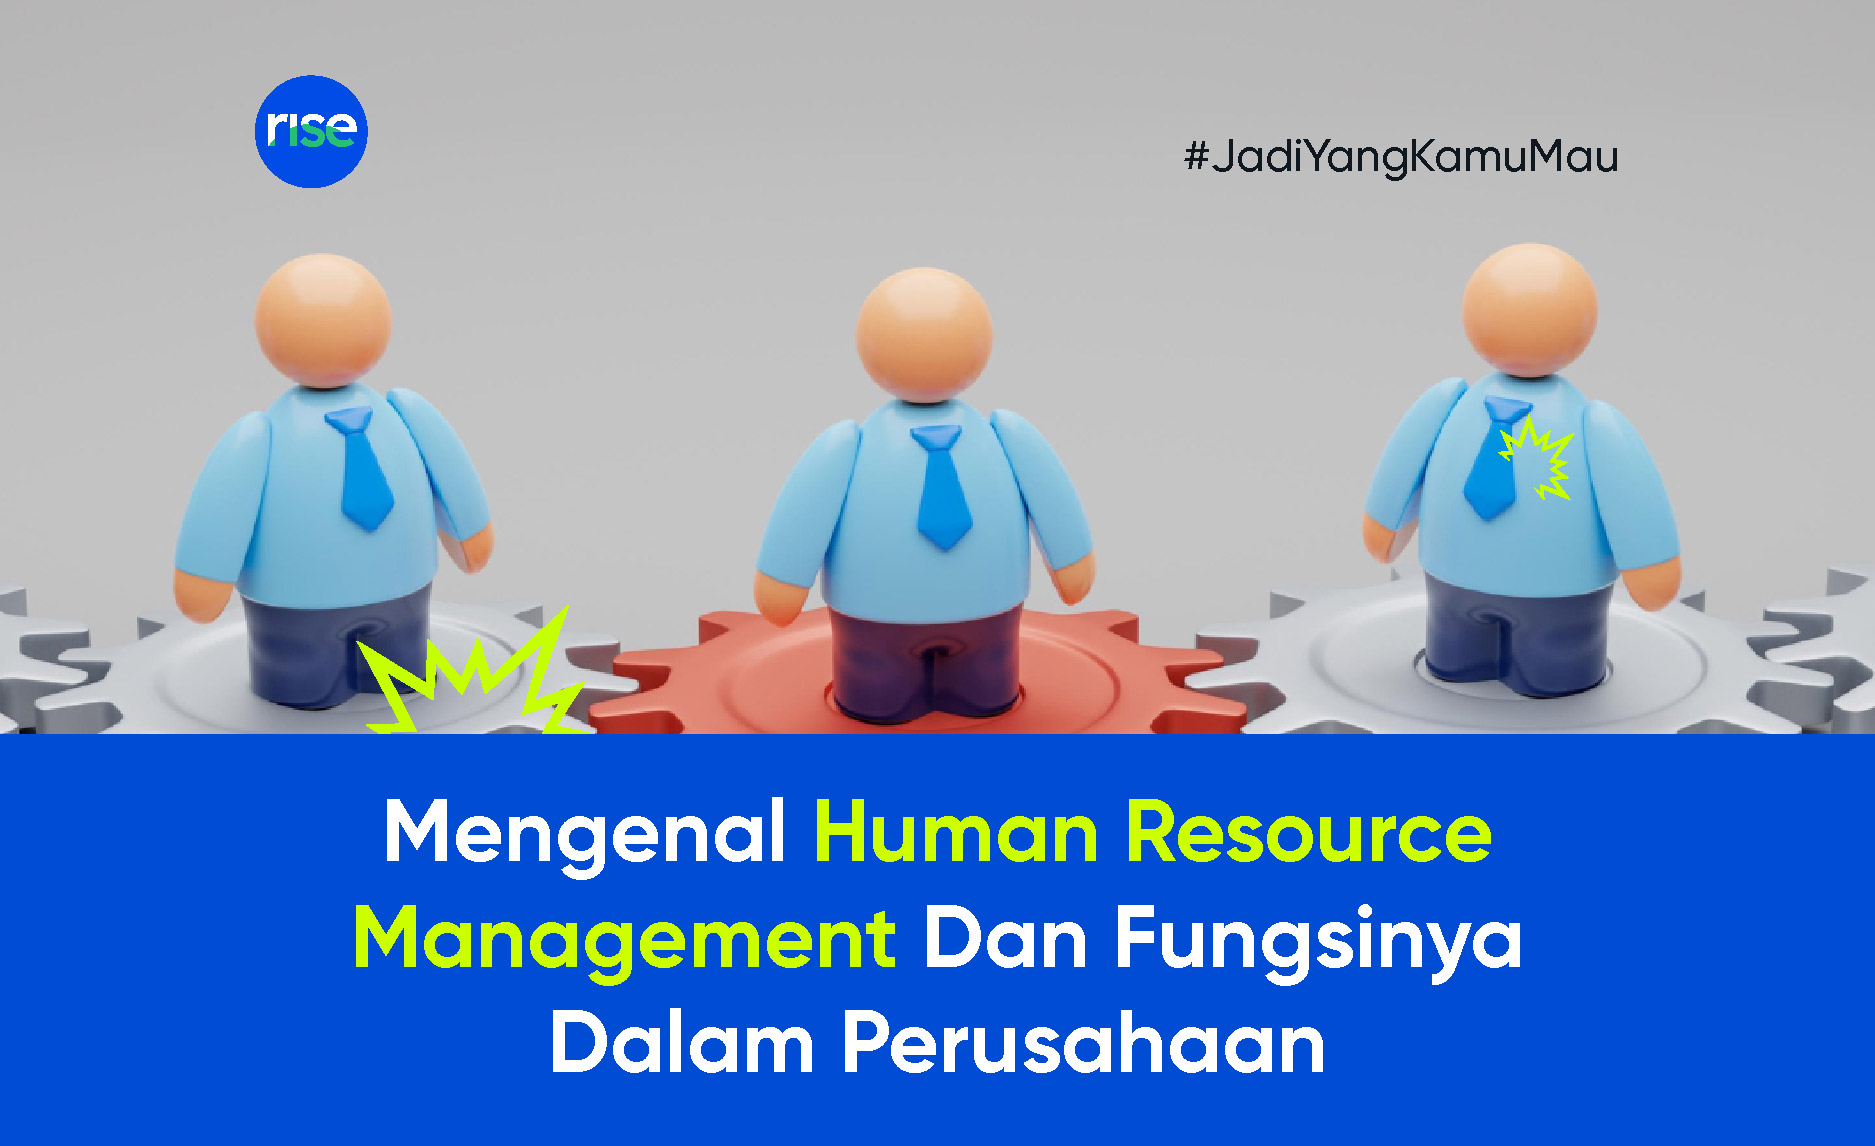 Mengenal Human Resource Management Dan Fungsinya Dalam Perusahaan